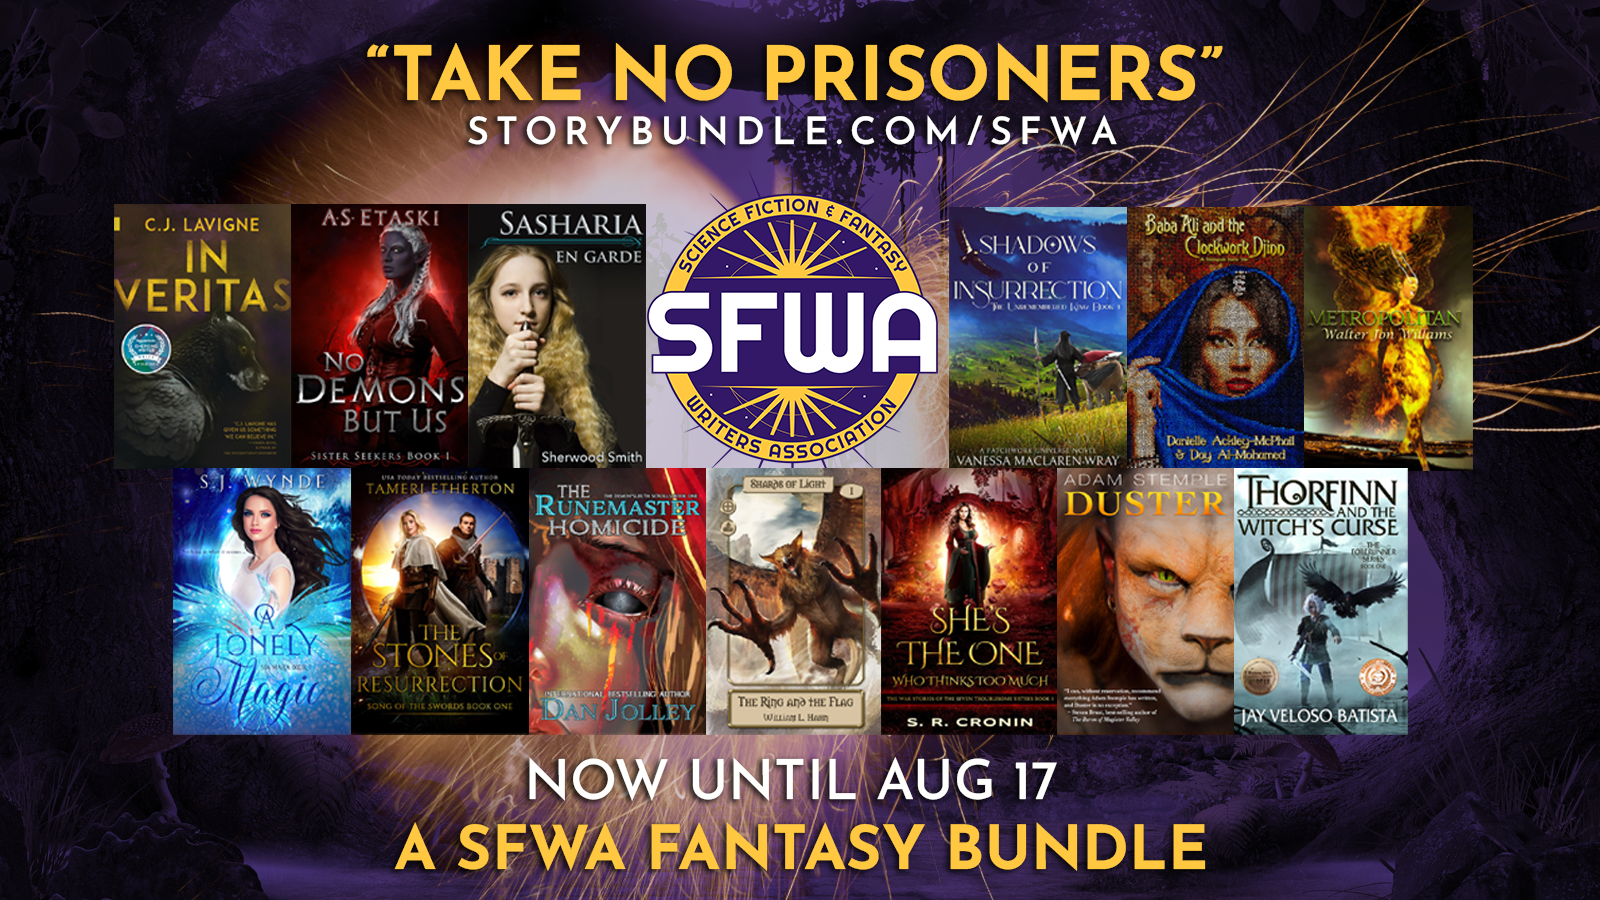 SFWA "Take No Prisoners" StoryBundle